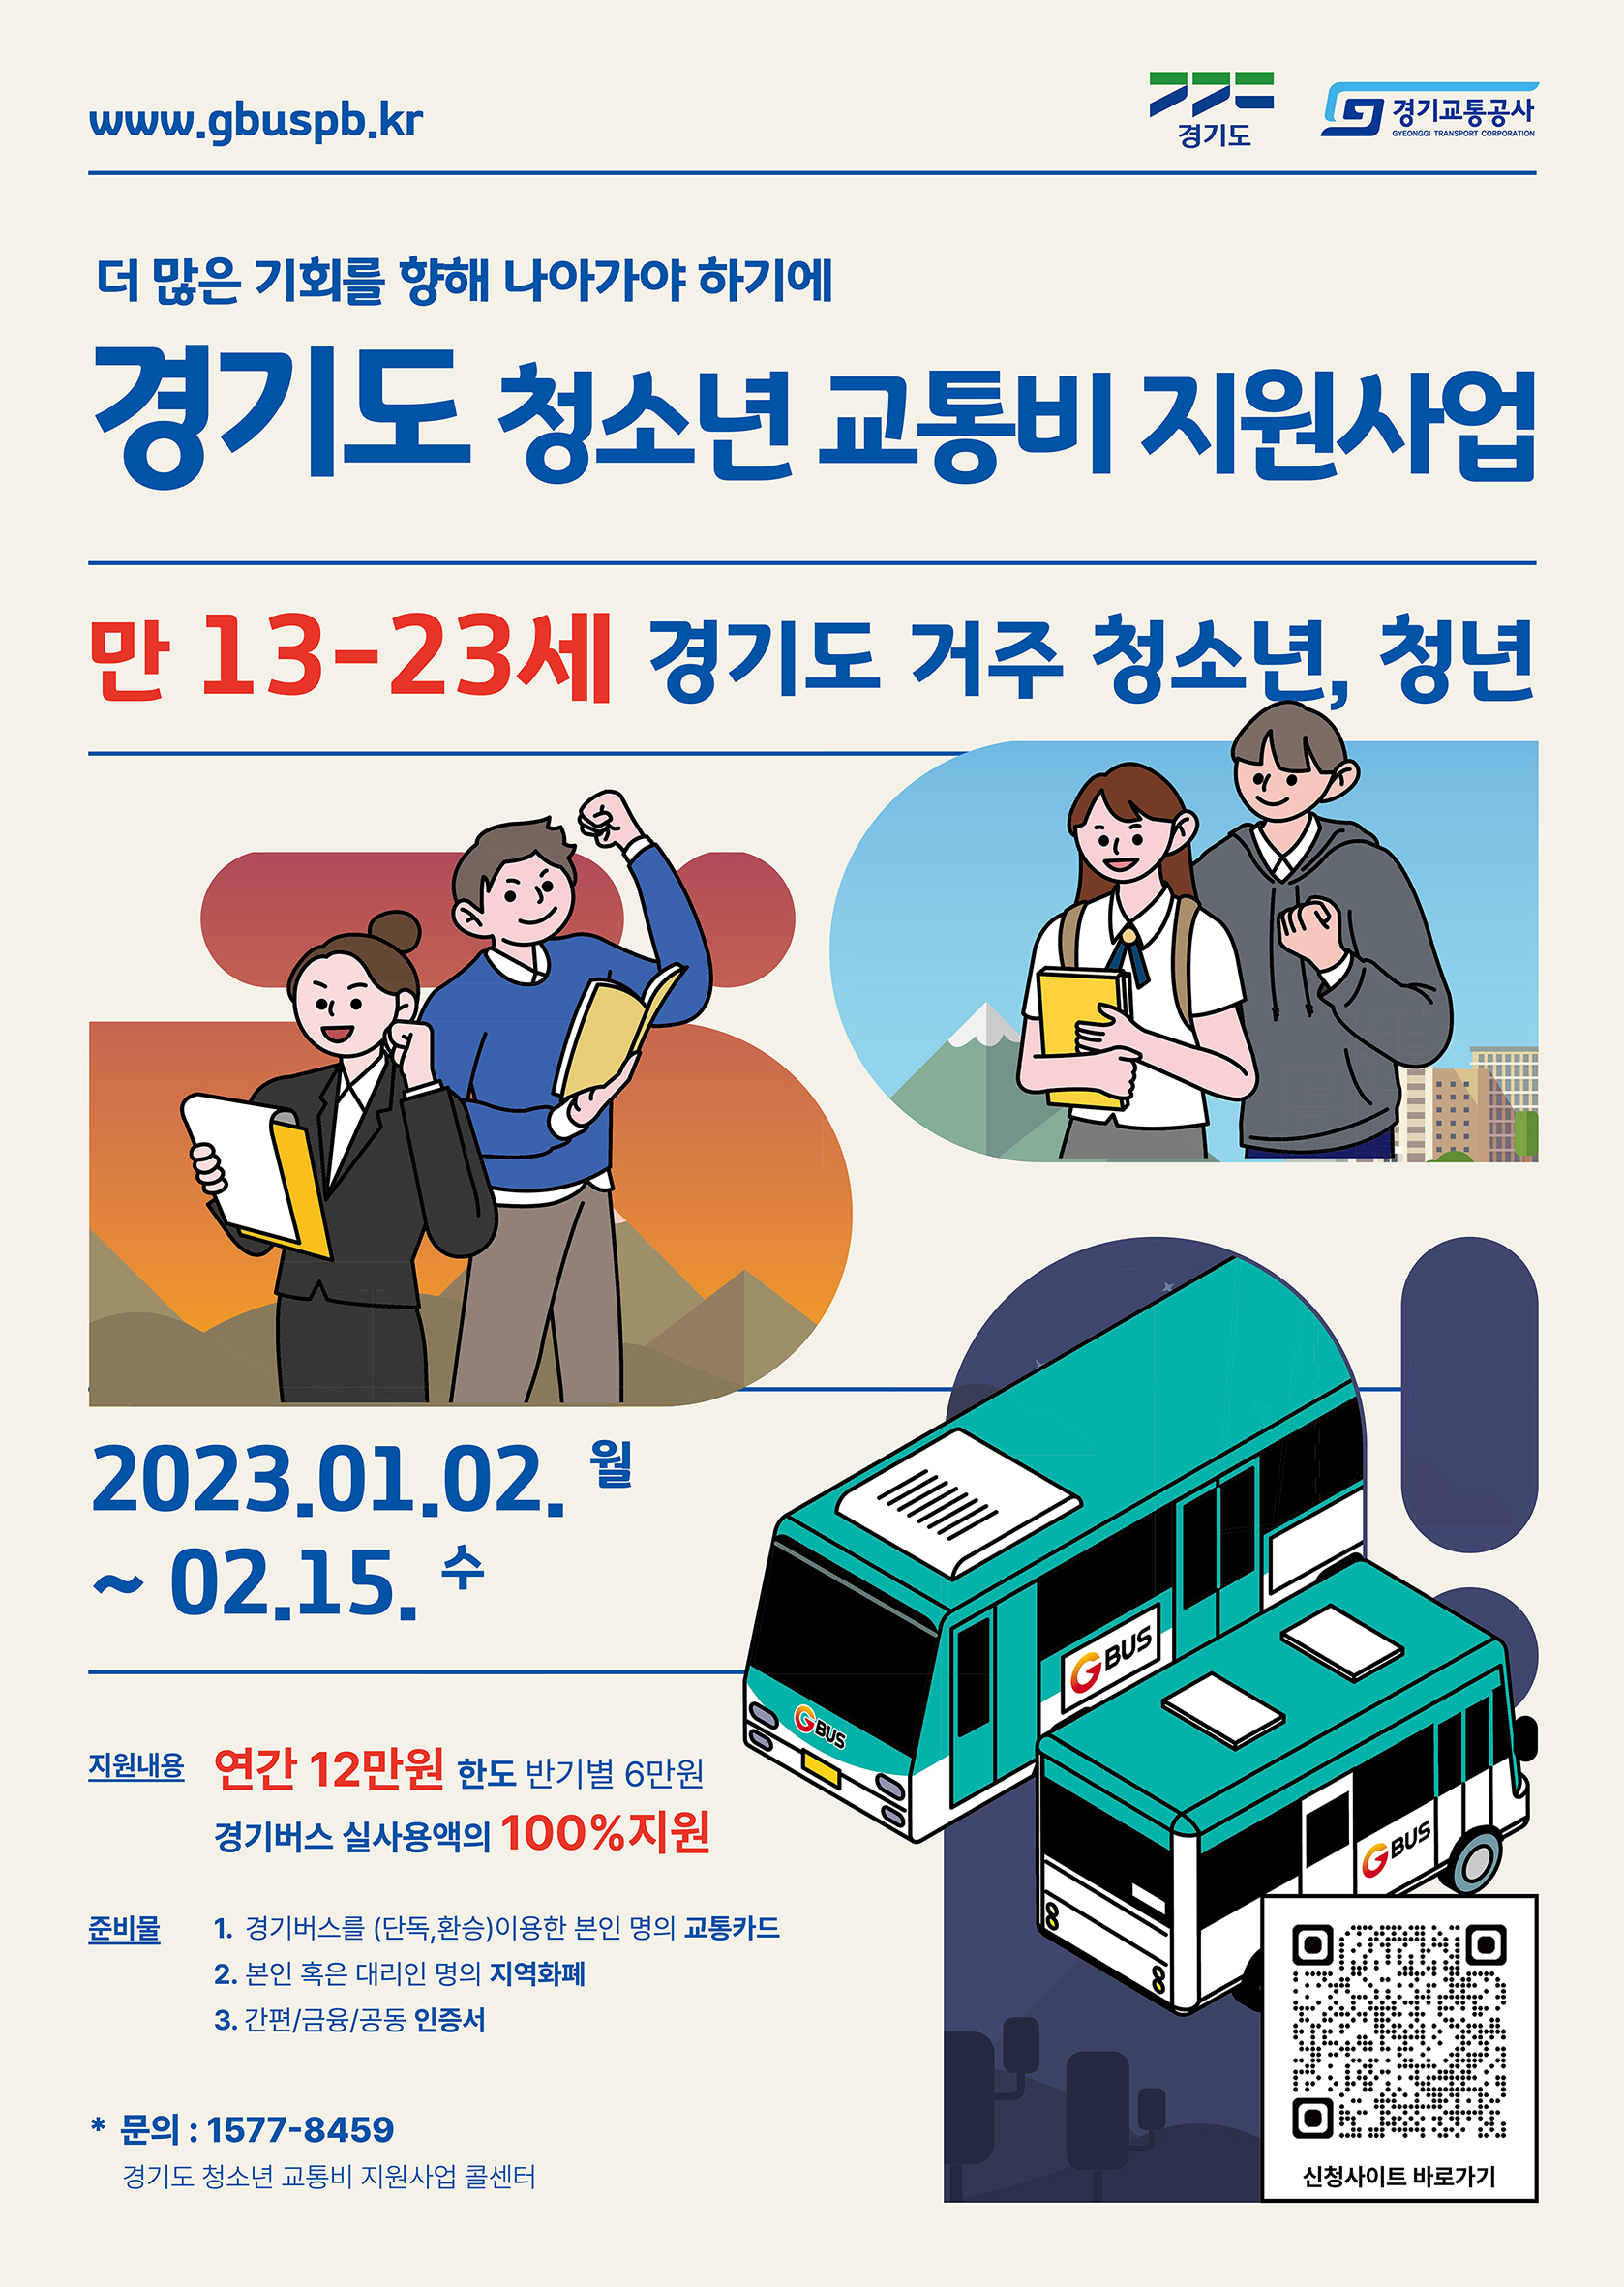 경기도 청소년 교통비 지원사업 홍보 안내이미지 1